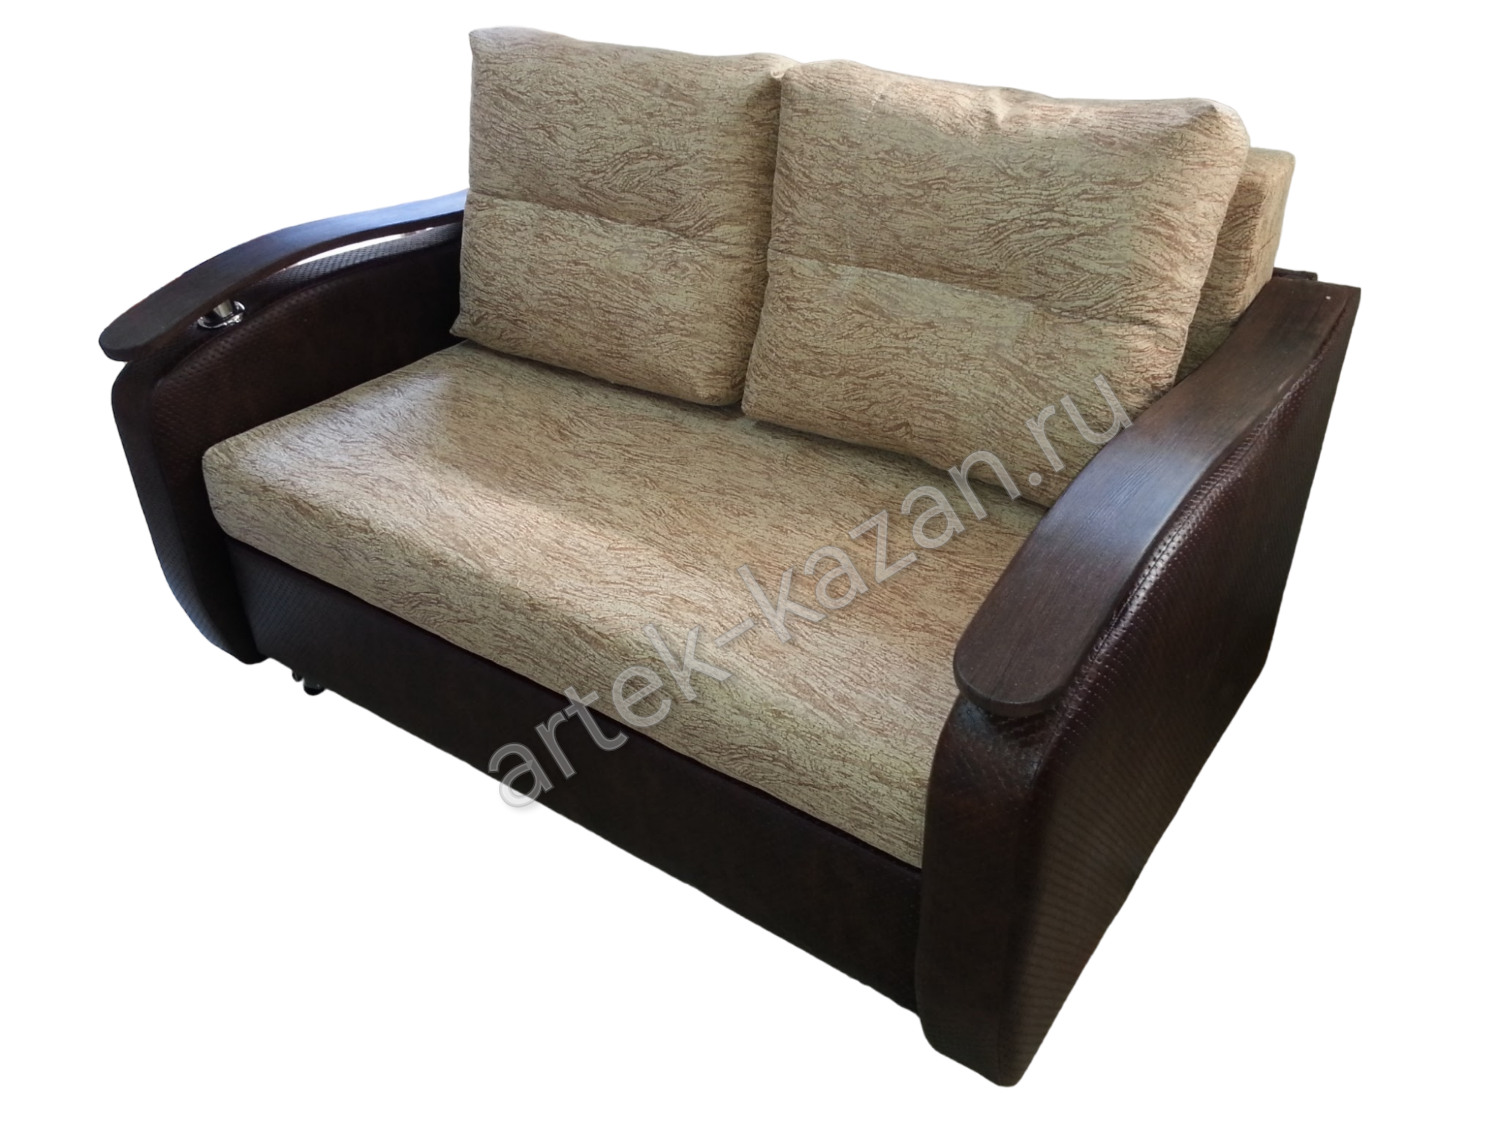 Мини диван на выкатном механизме Миник фото № 5. Купить недорогой диван по низкой цене от производителя можно у нас.